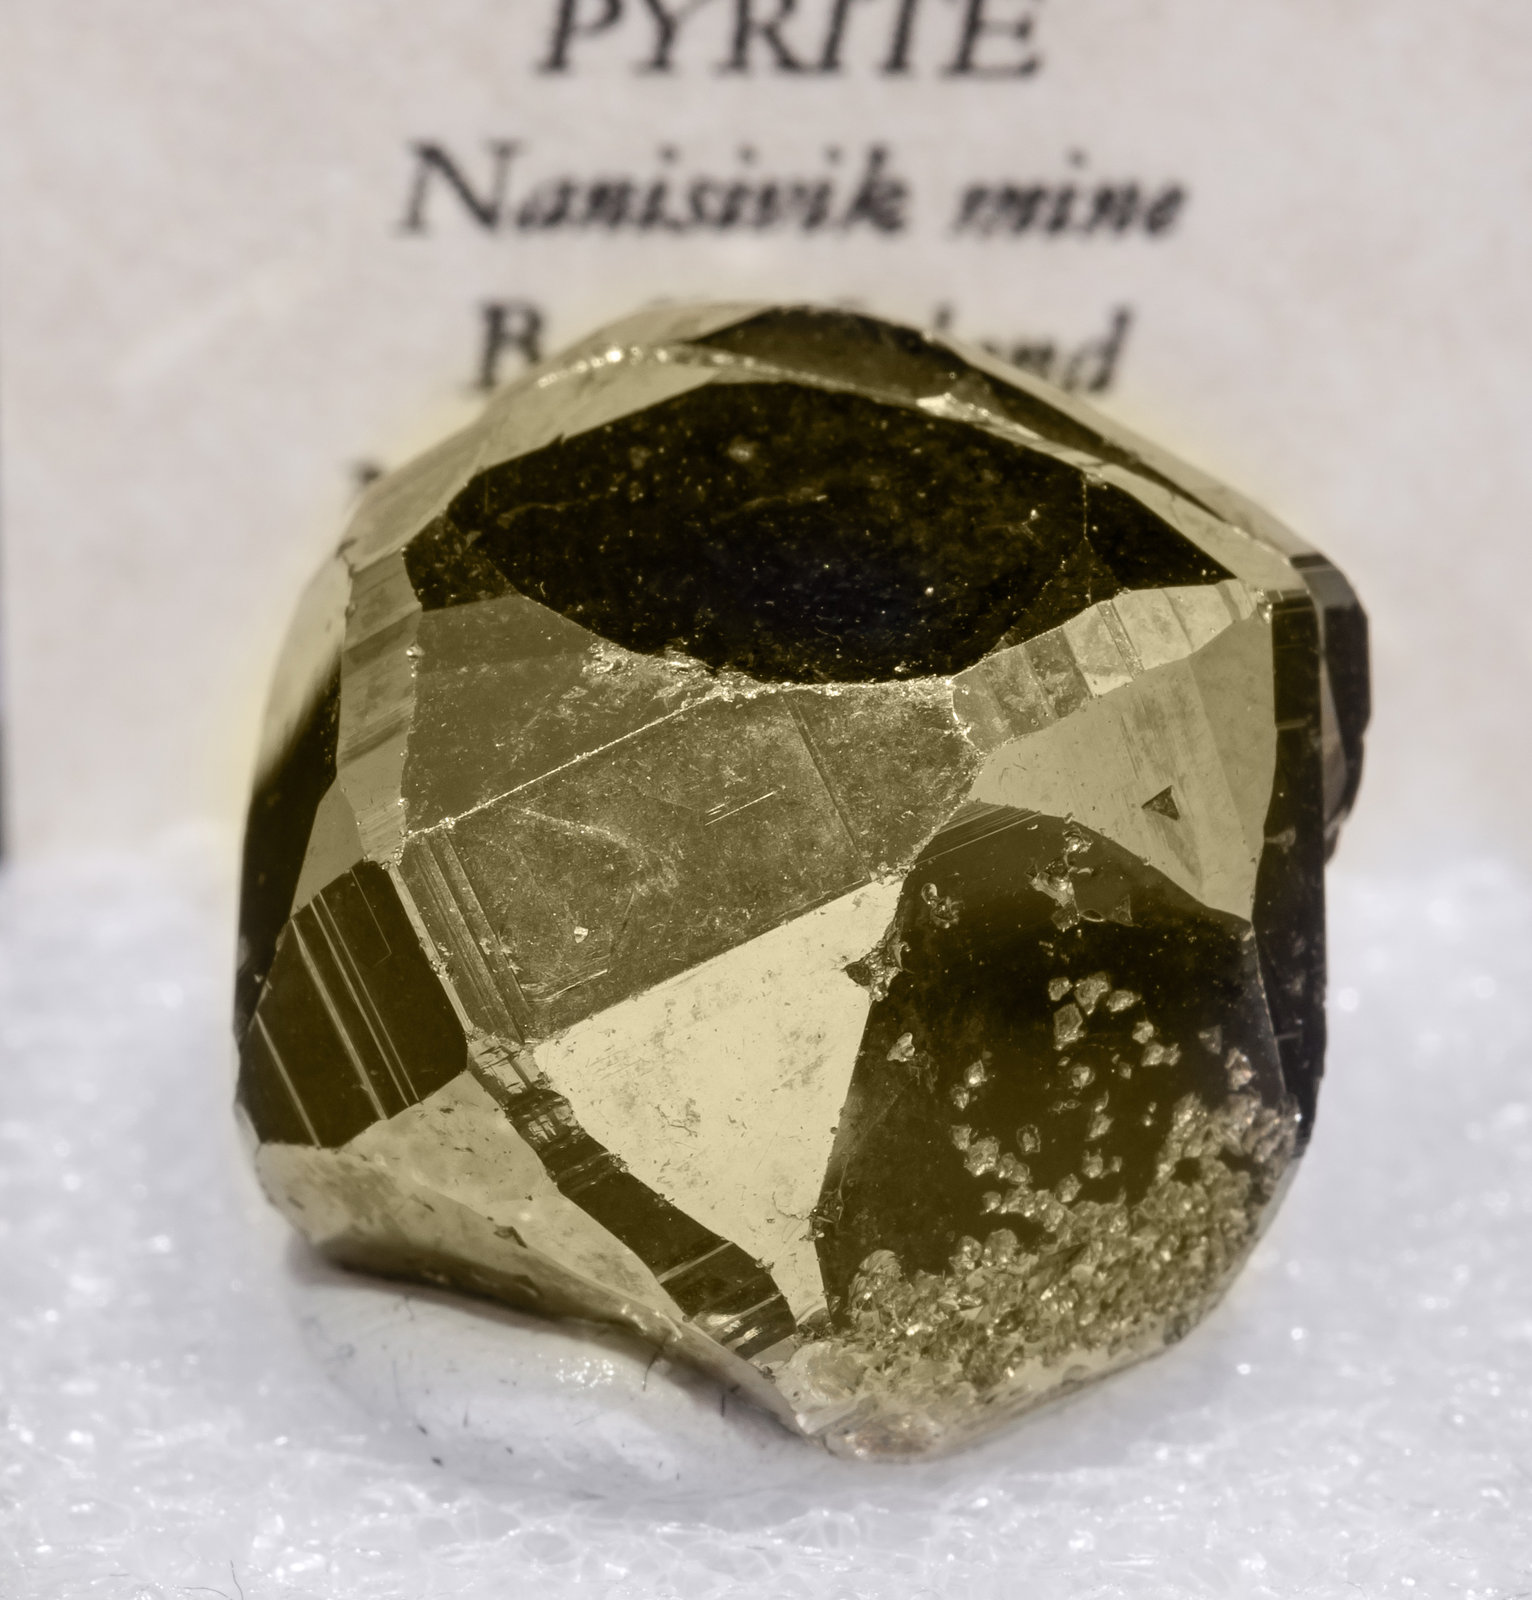 specimens/s_imagesAL5/Pyrite-TQ47AL5f2.jpg